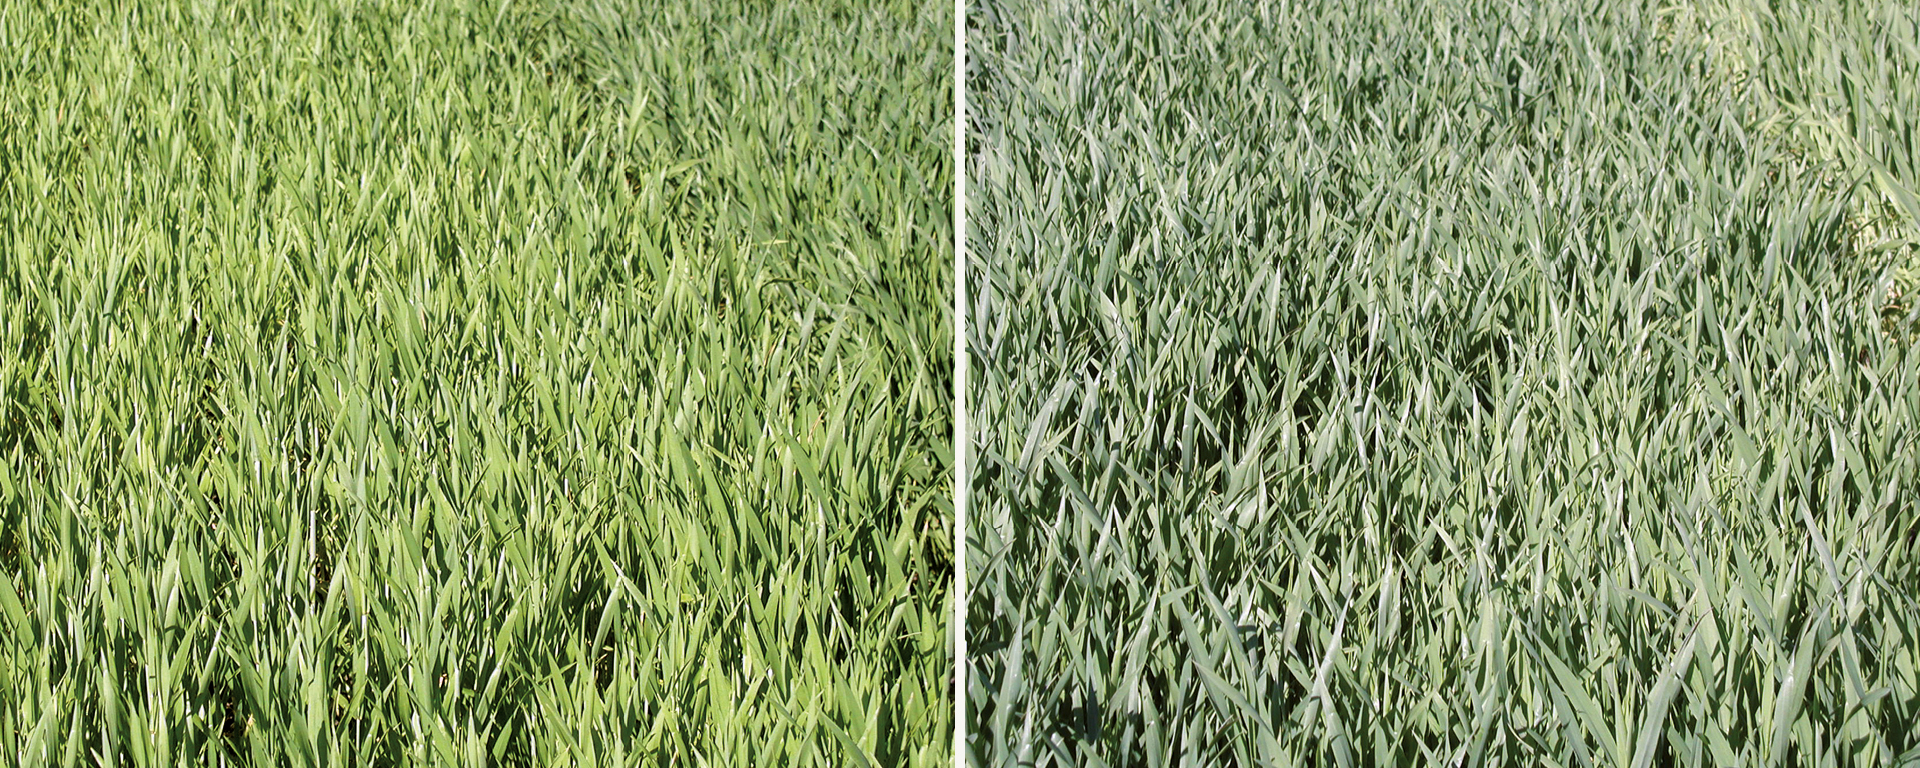 Wirkung von Sulfat-Schwefel in Winterweizen. Links (Kontrolle ohne Schwefeldüngung, rechts 30kg/ha Schwefel in Sulfatform) (Fotos: Landwirtschaftskammer NRW )